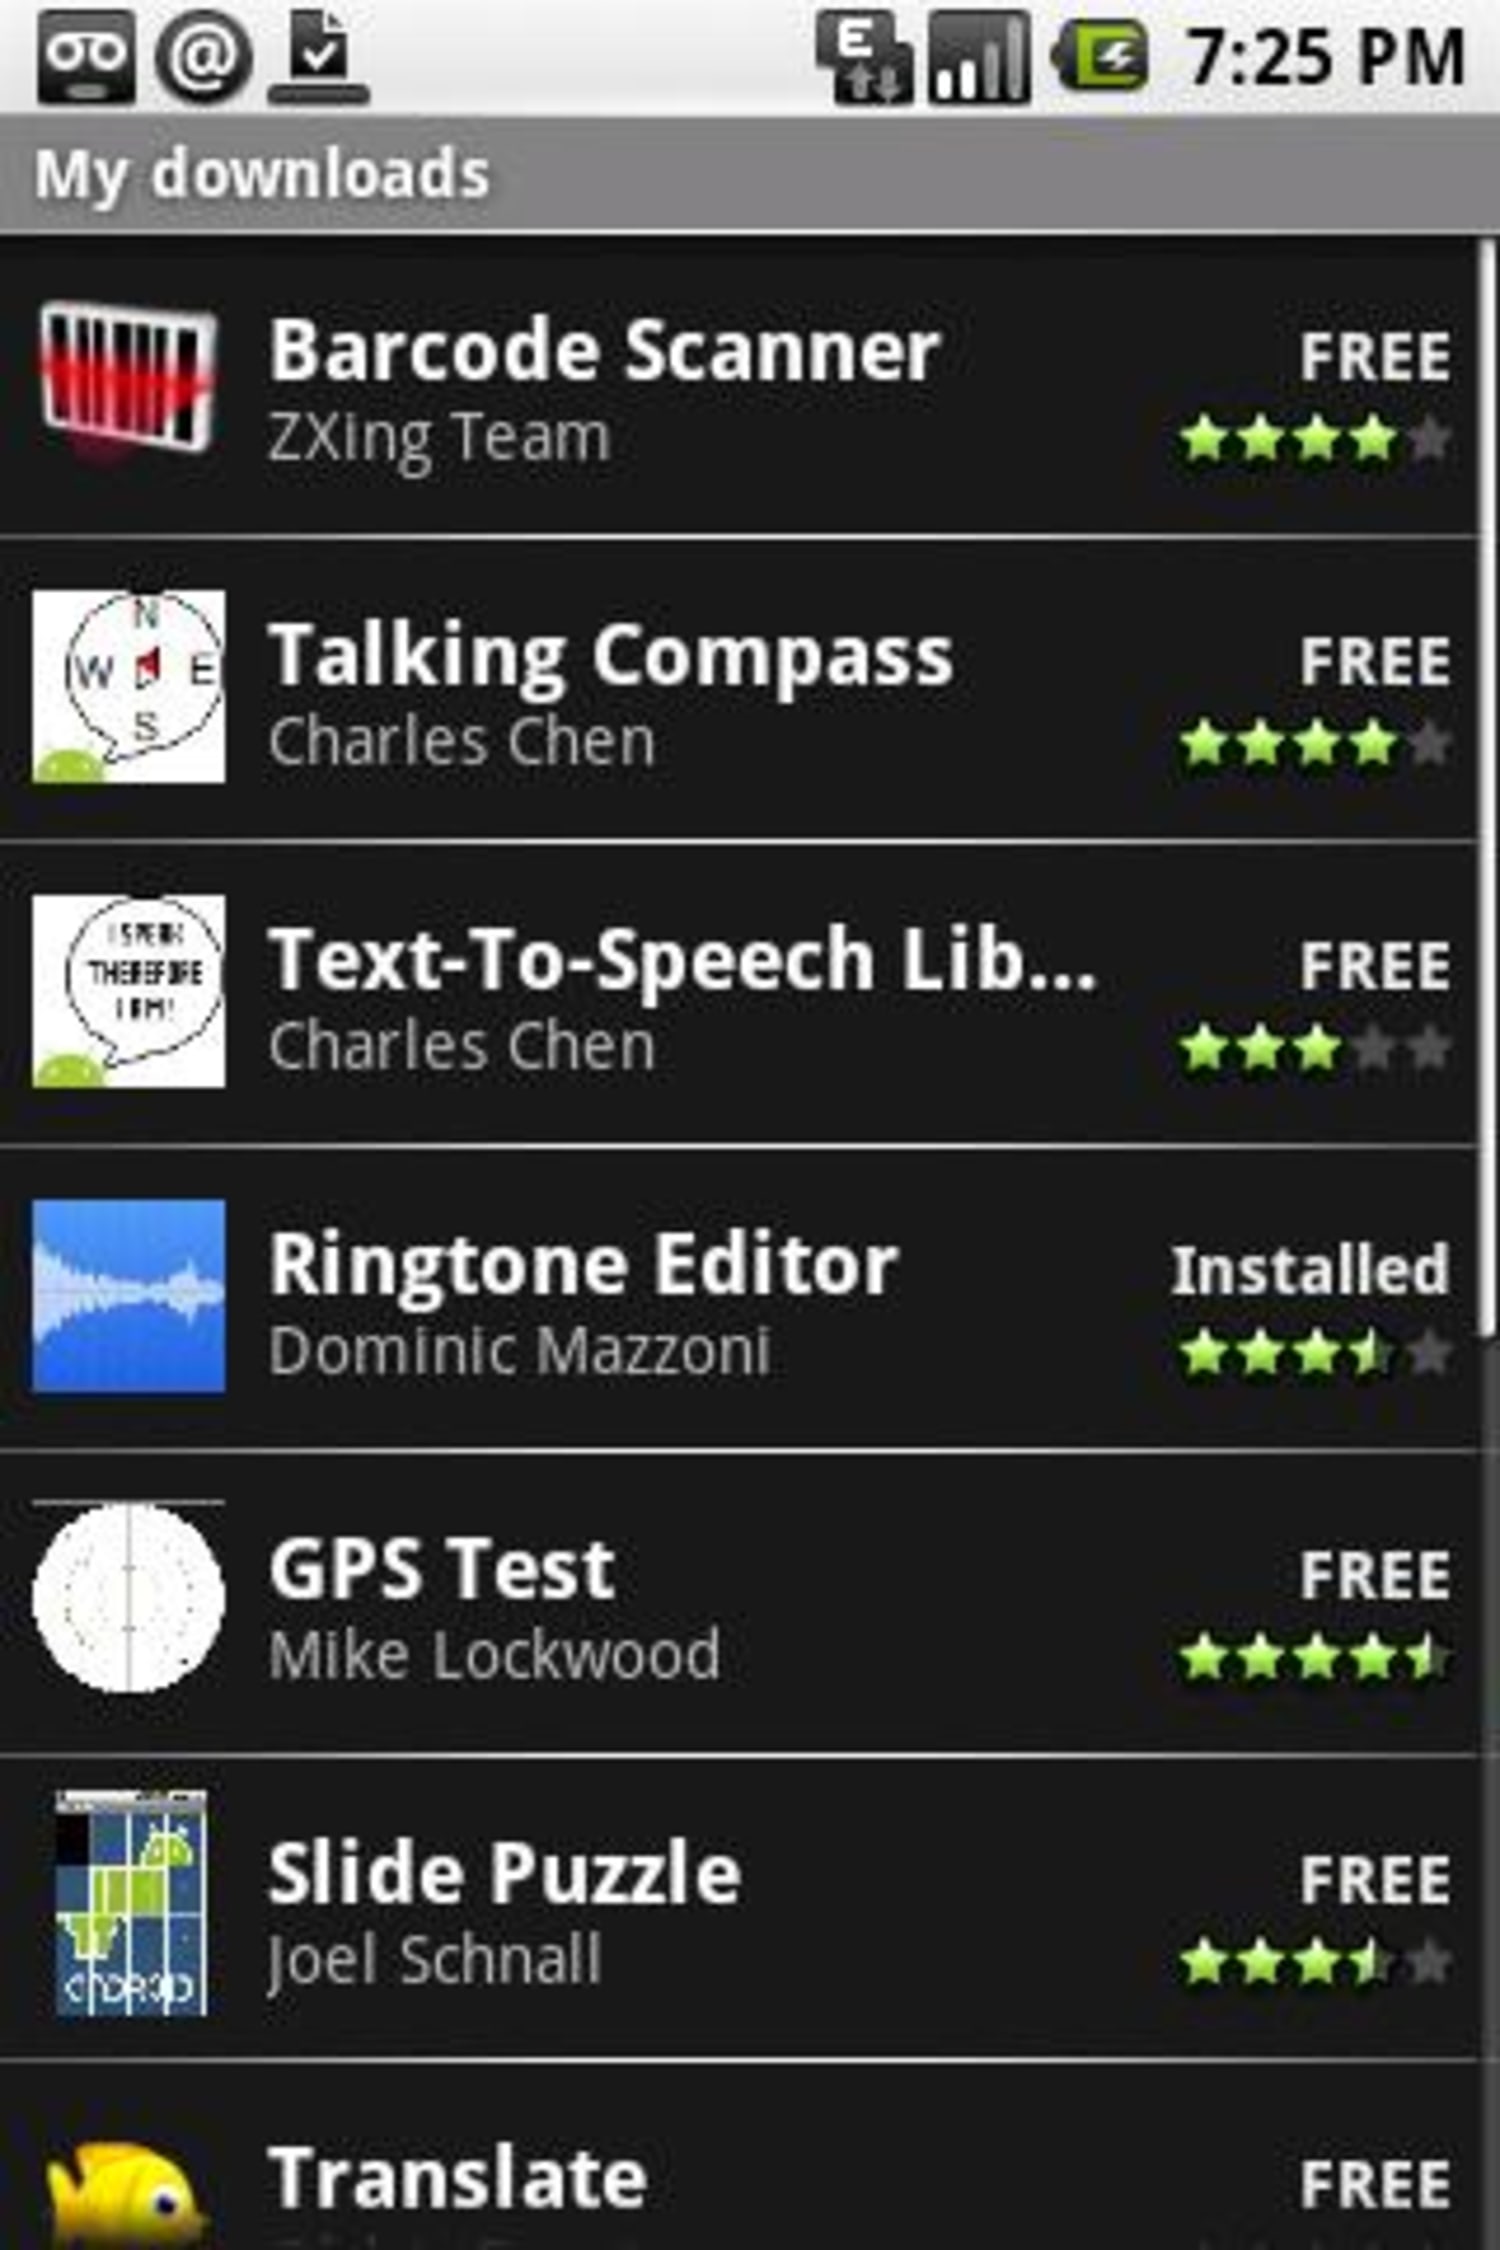 Conheça os 25 melhores apps grátis para Android